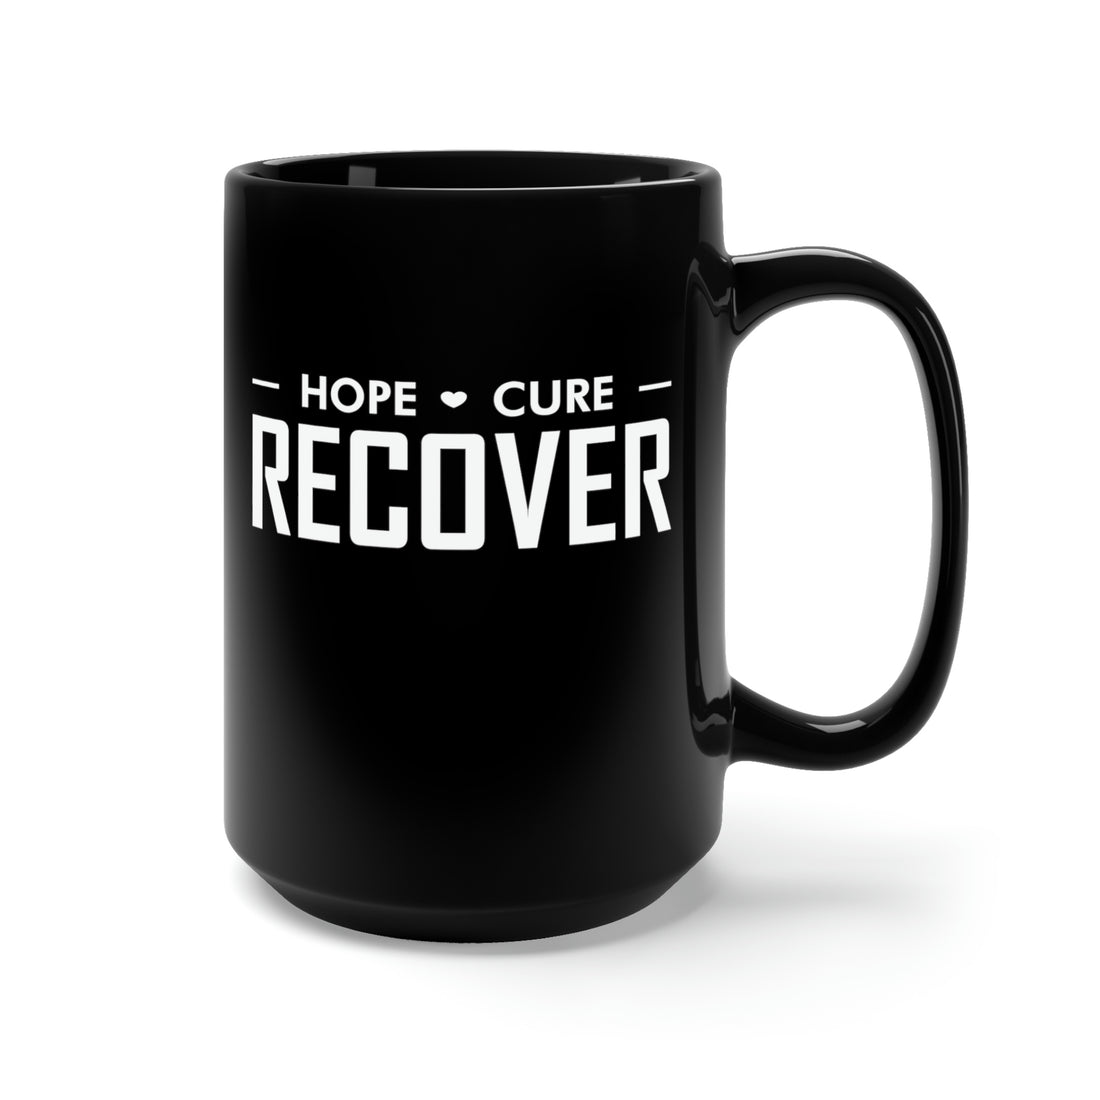 Hope Cure Recover - Large 15oz Black Mug